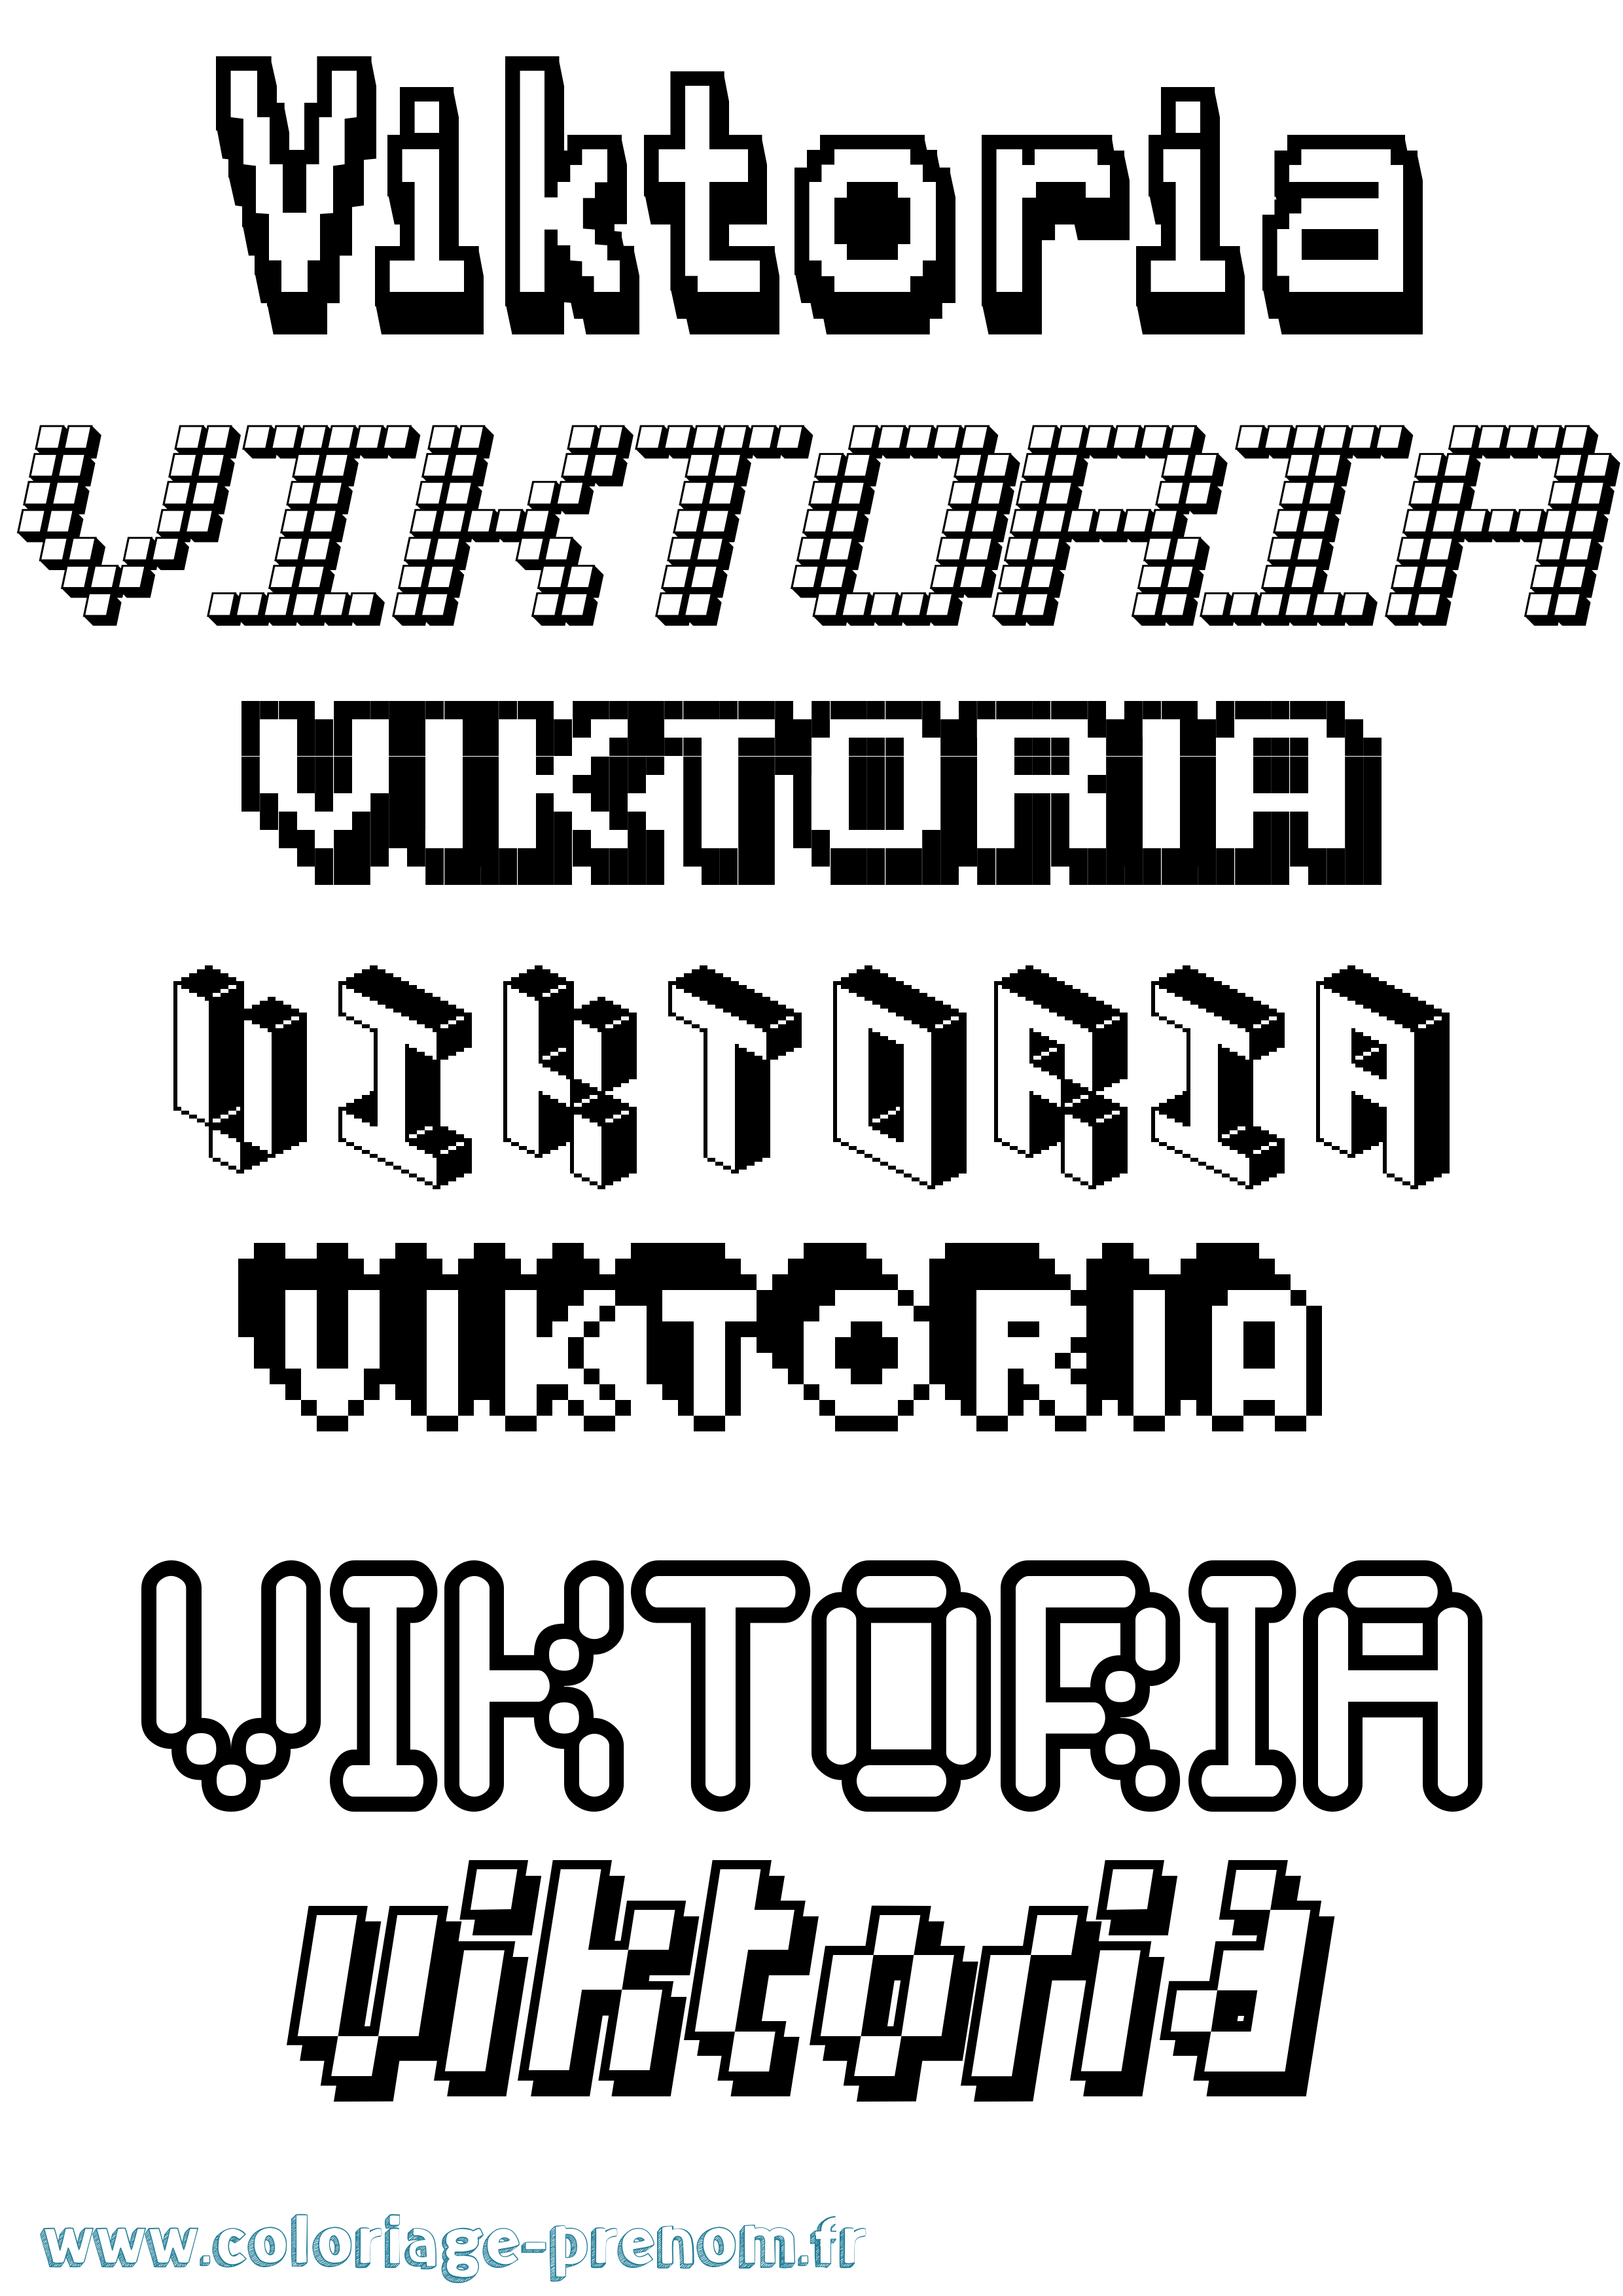 Coloriage prénom Viktoria Pixel